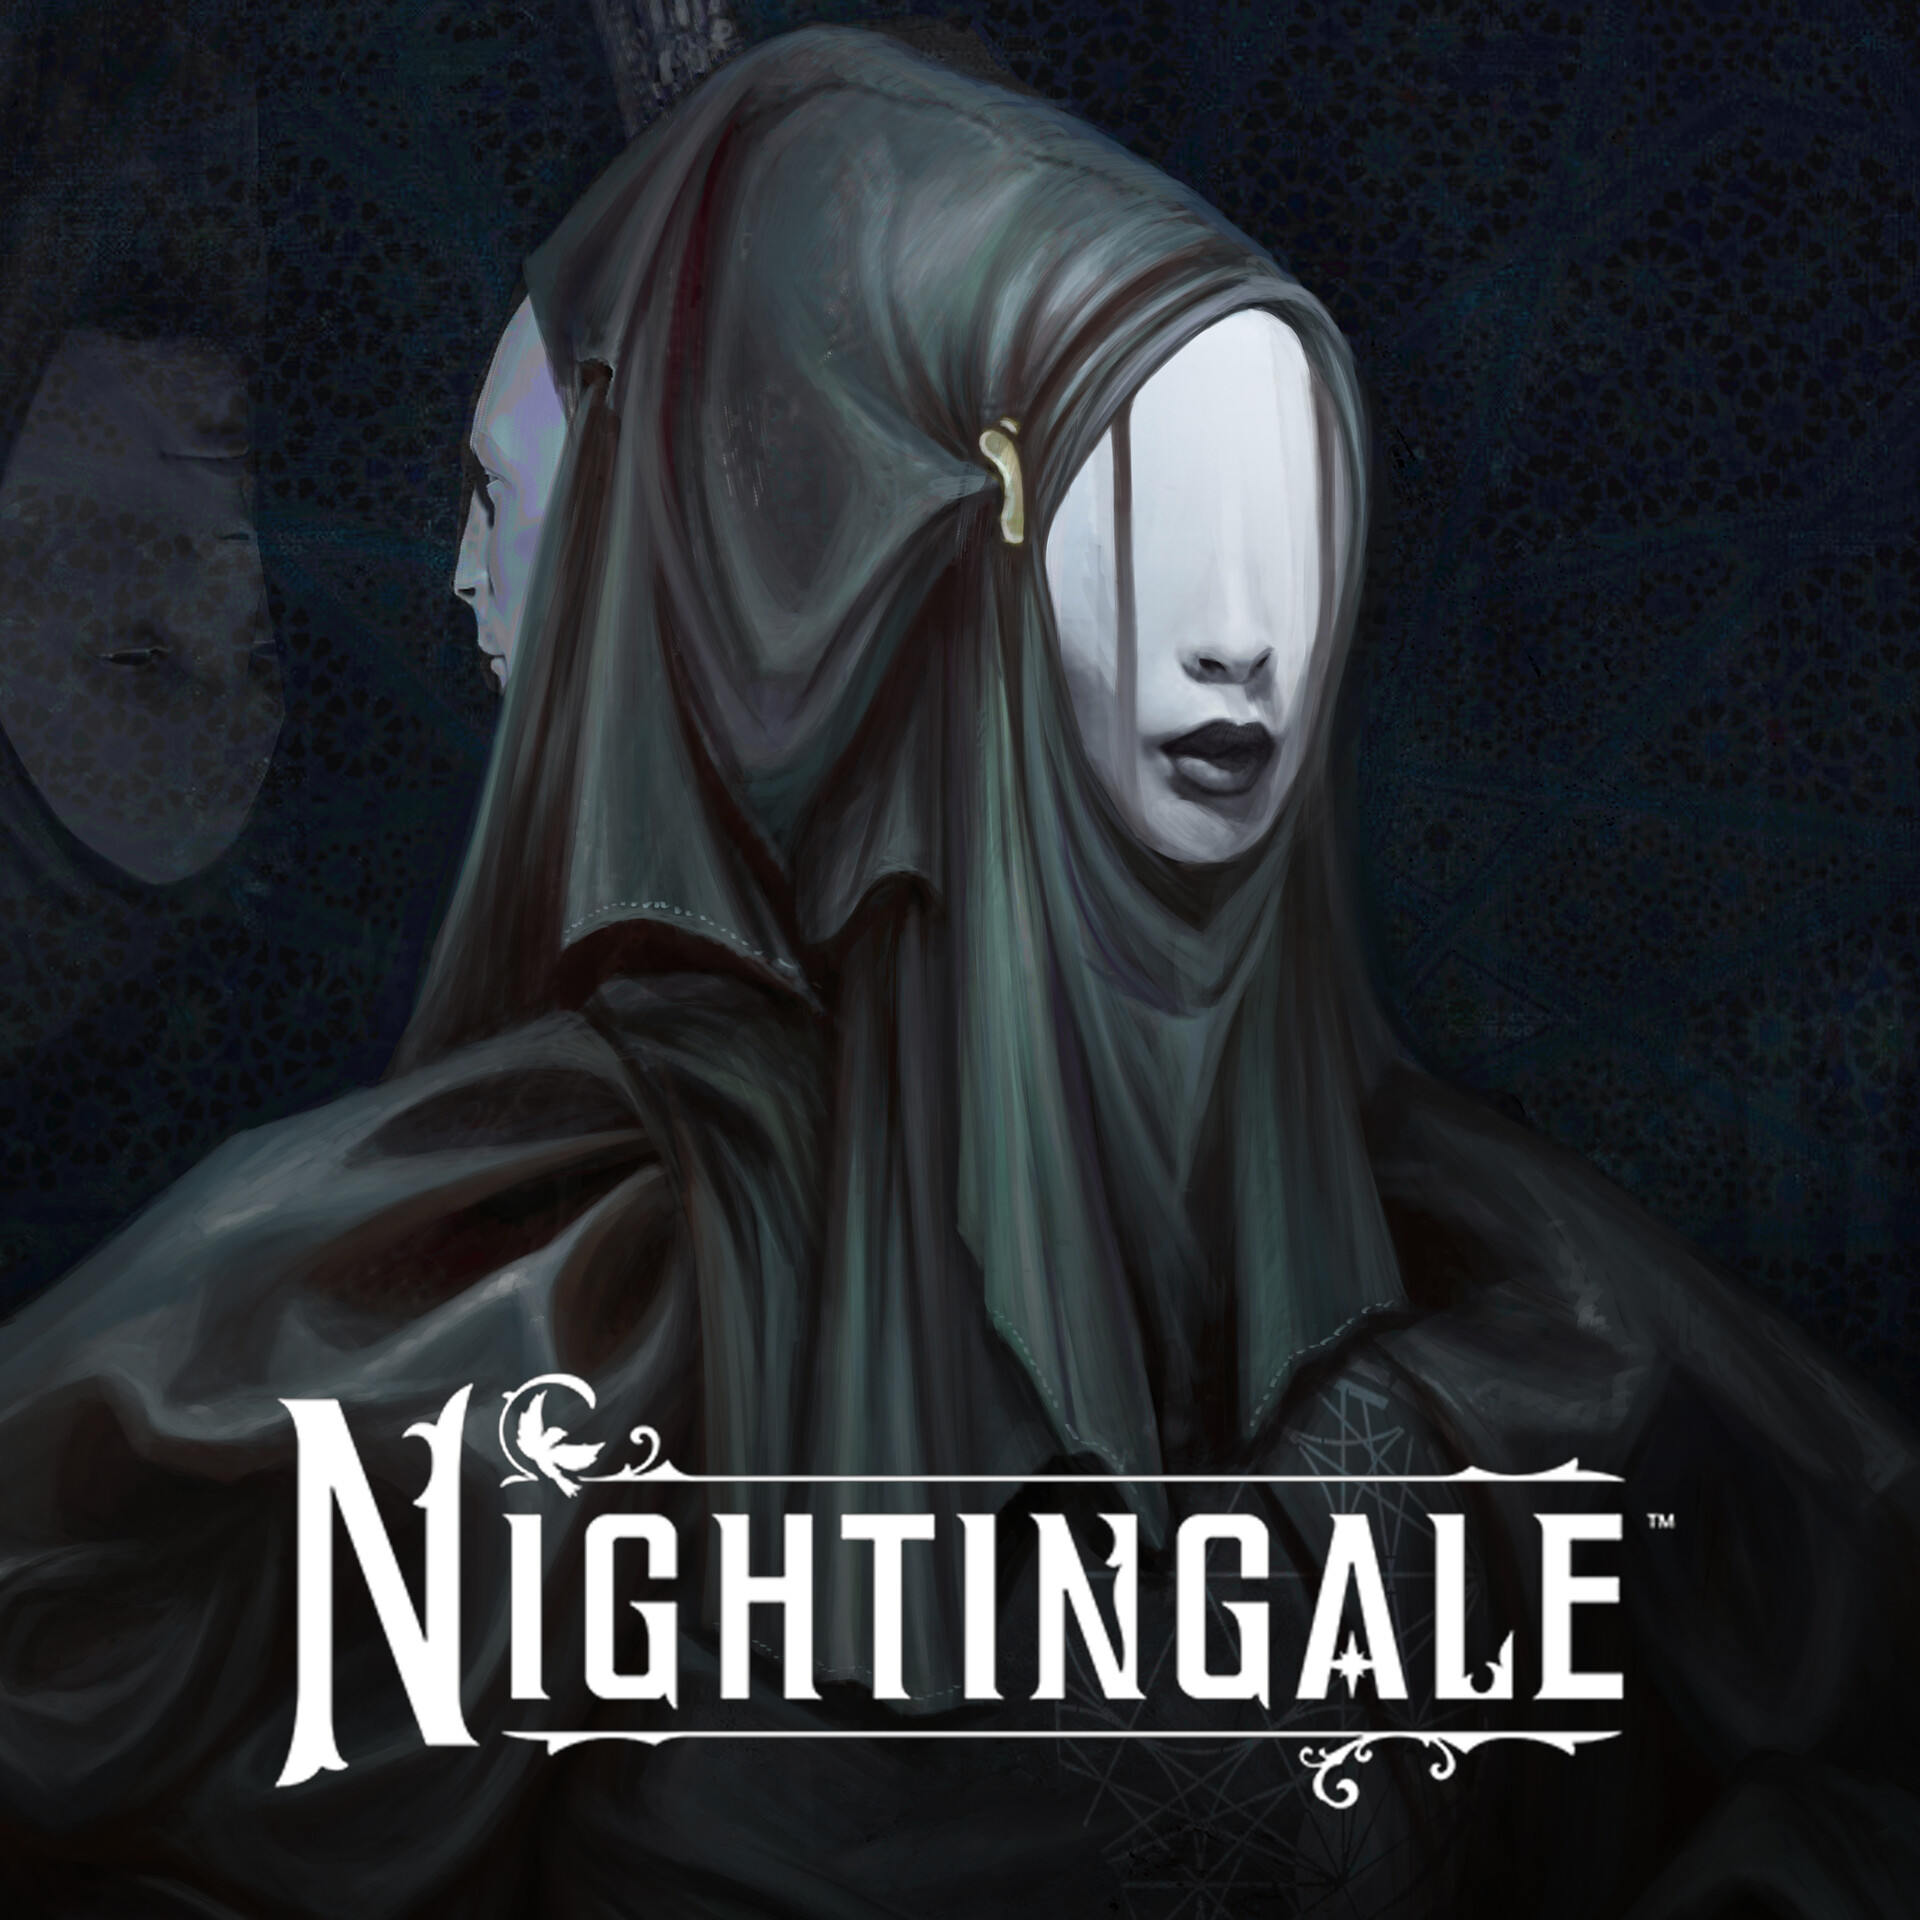 Nightingale игра купить. Nightingale игра. Nightingale Дата выхода. Nightingale Скриншоты игры. Nightingale игра персонажи.